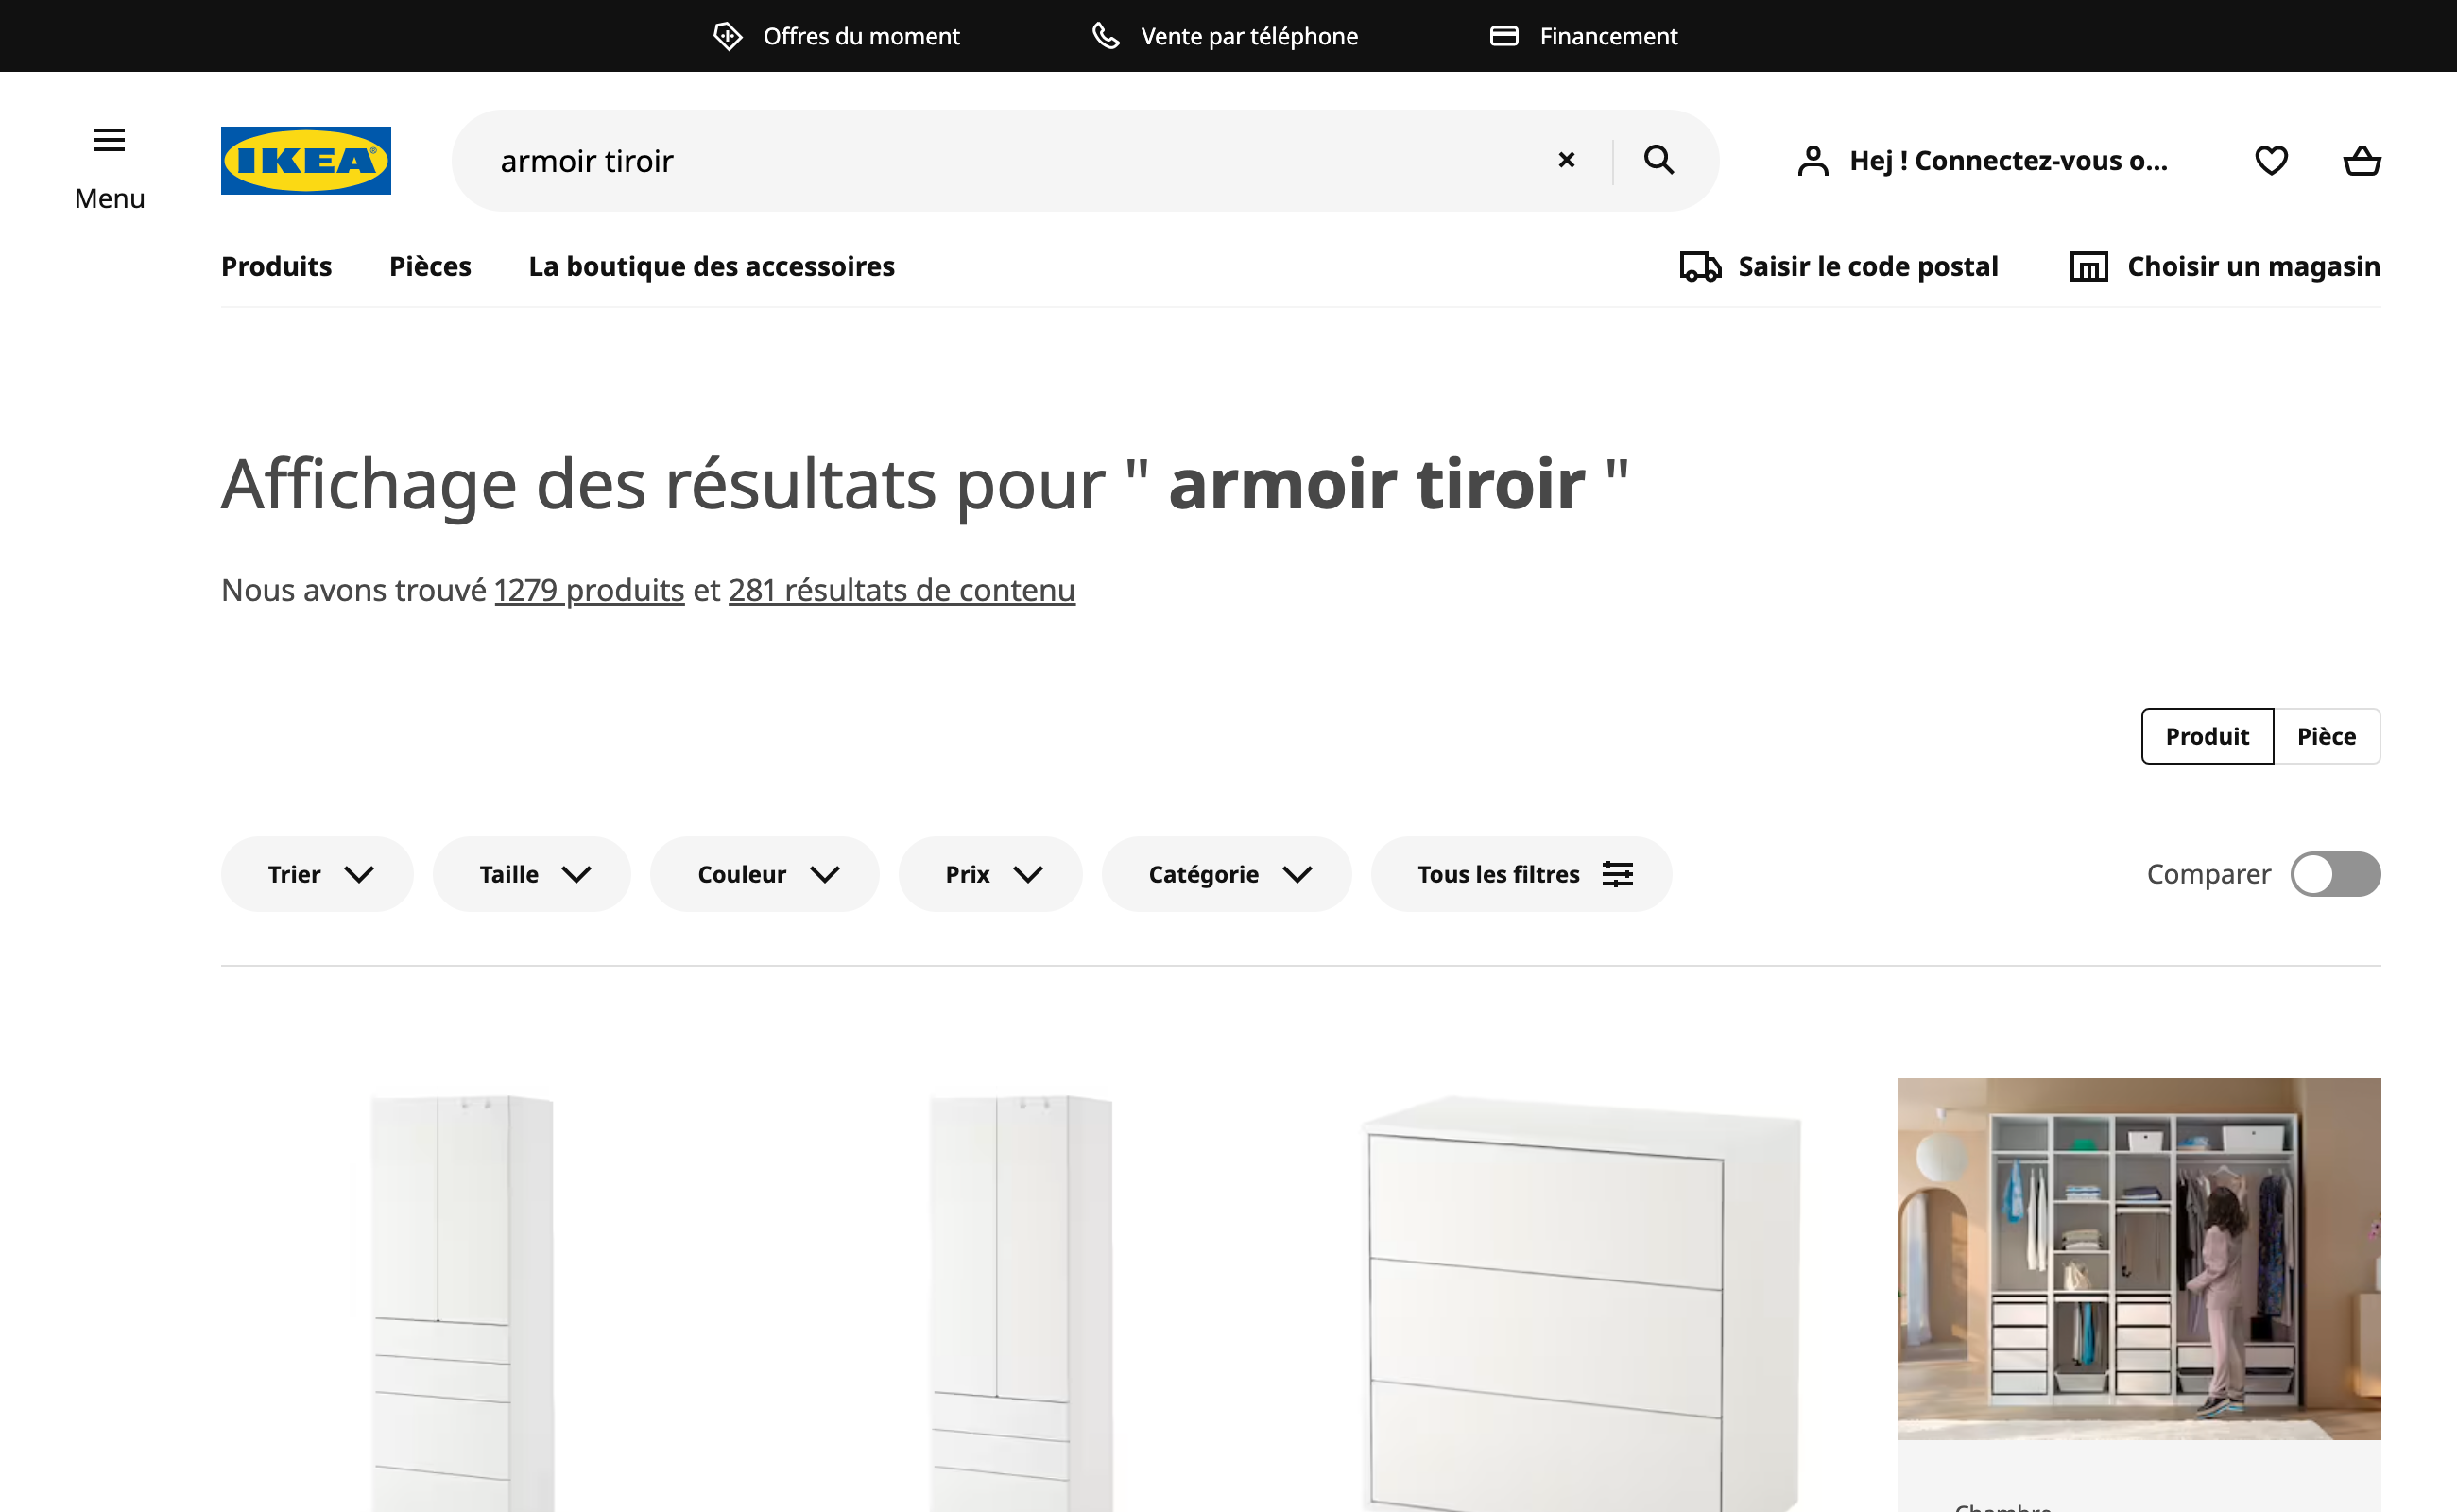 Résultat de la recherche pour Armoir tiroir dans le moteur de recherche du site Ikea.com